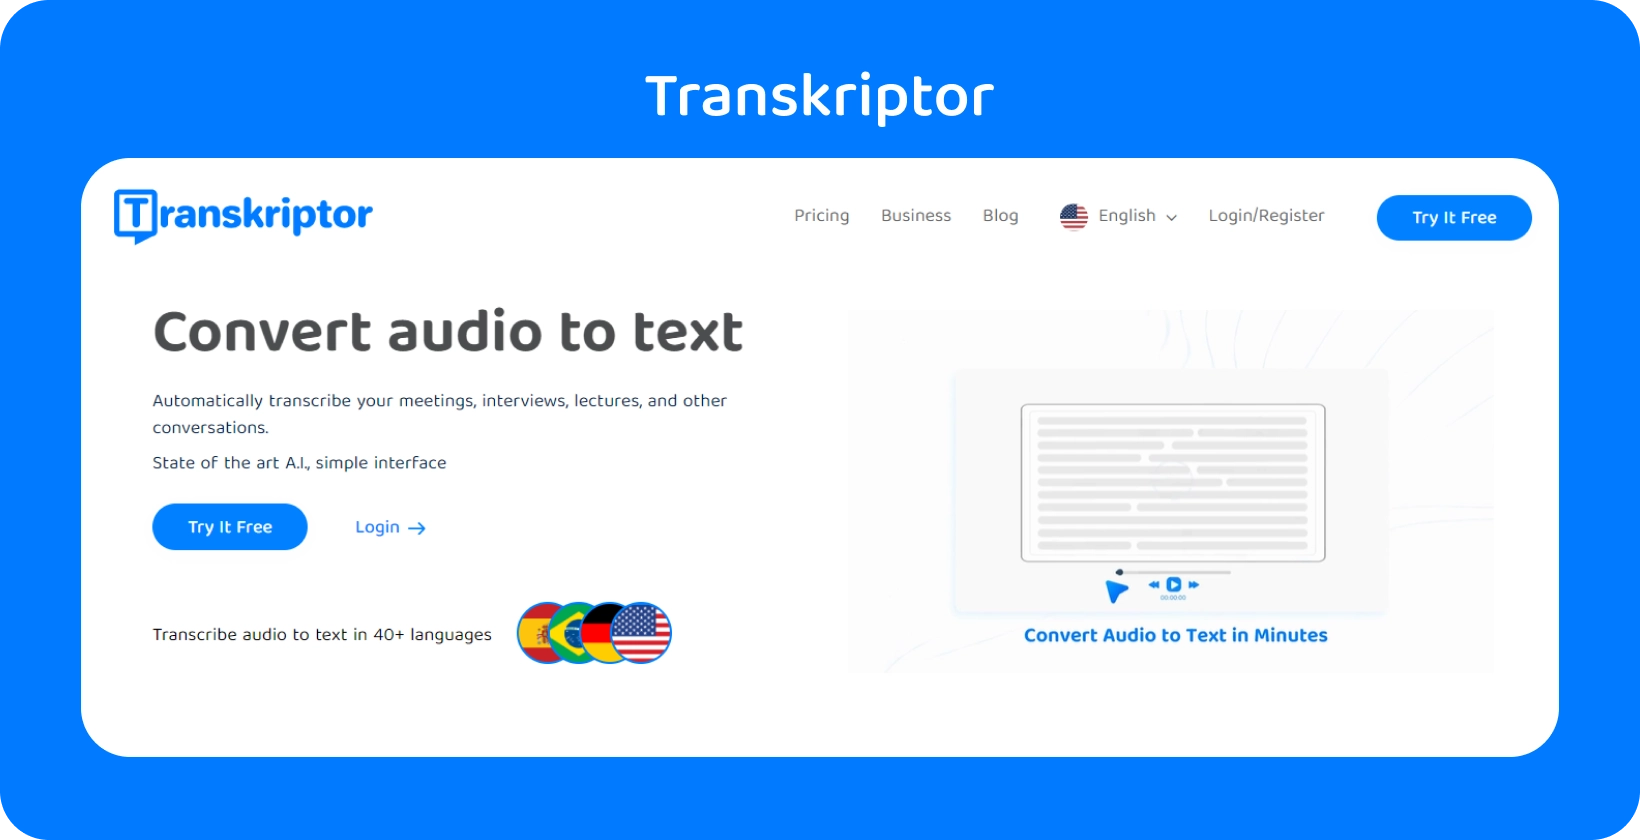 Transkriptor'nin arayüzü, çeşitli dosya formatları için 40'tan fazla dili destekleyerek metne ses dönüştürmeyi gösterir.
